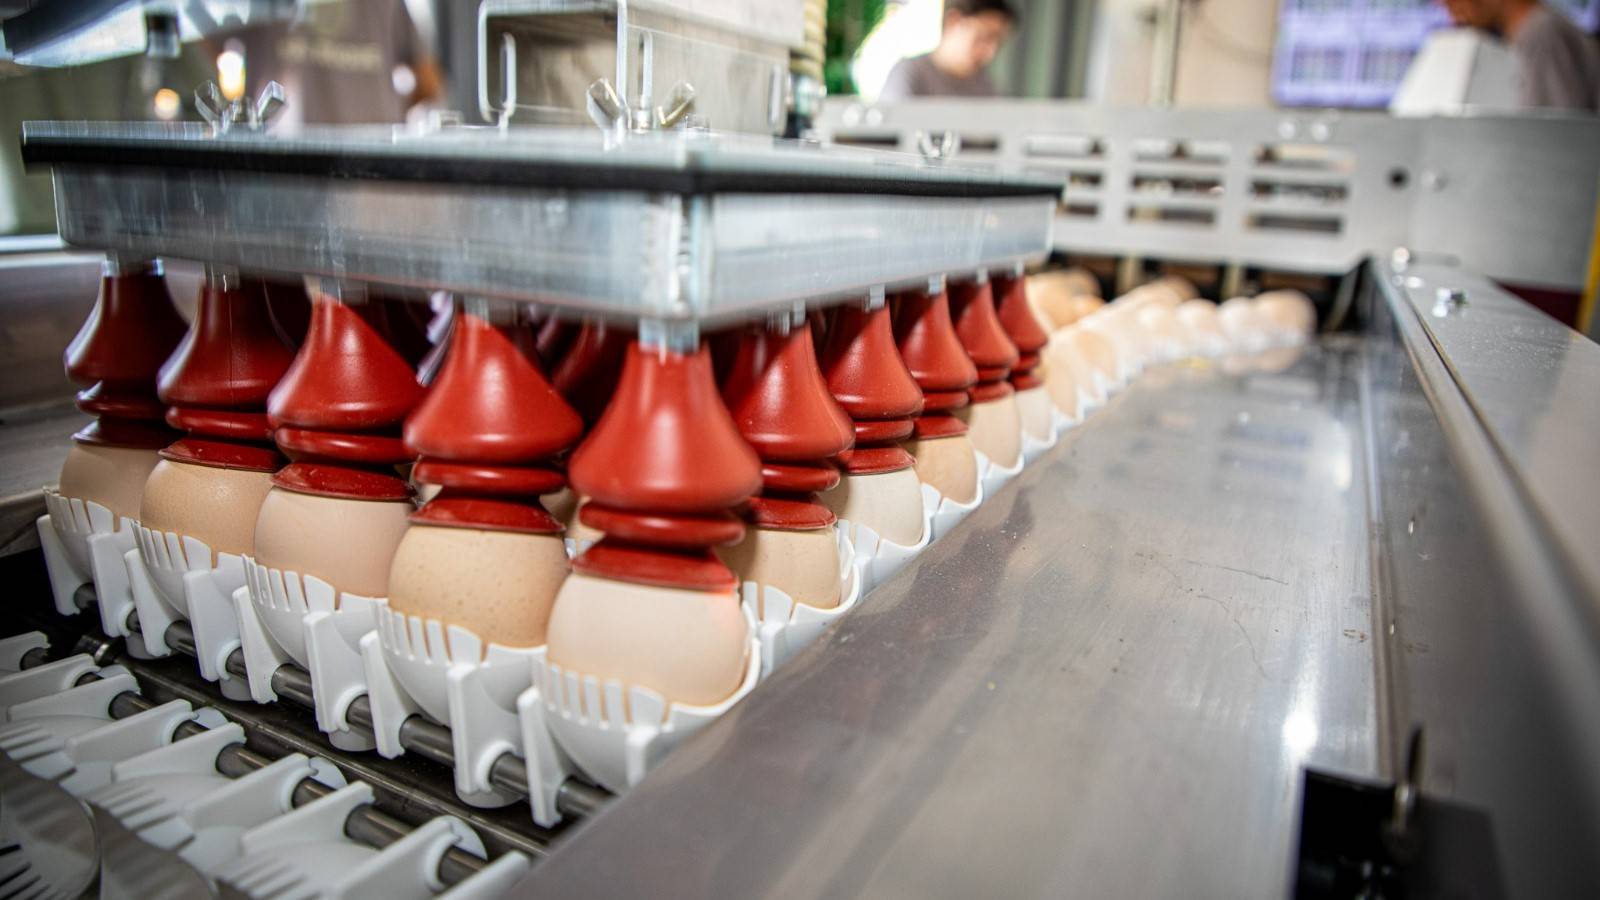 Com foco em eficiência e agilidade, recolha de ovos férteis ganha automação